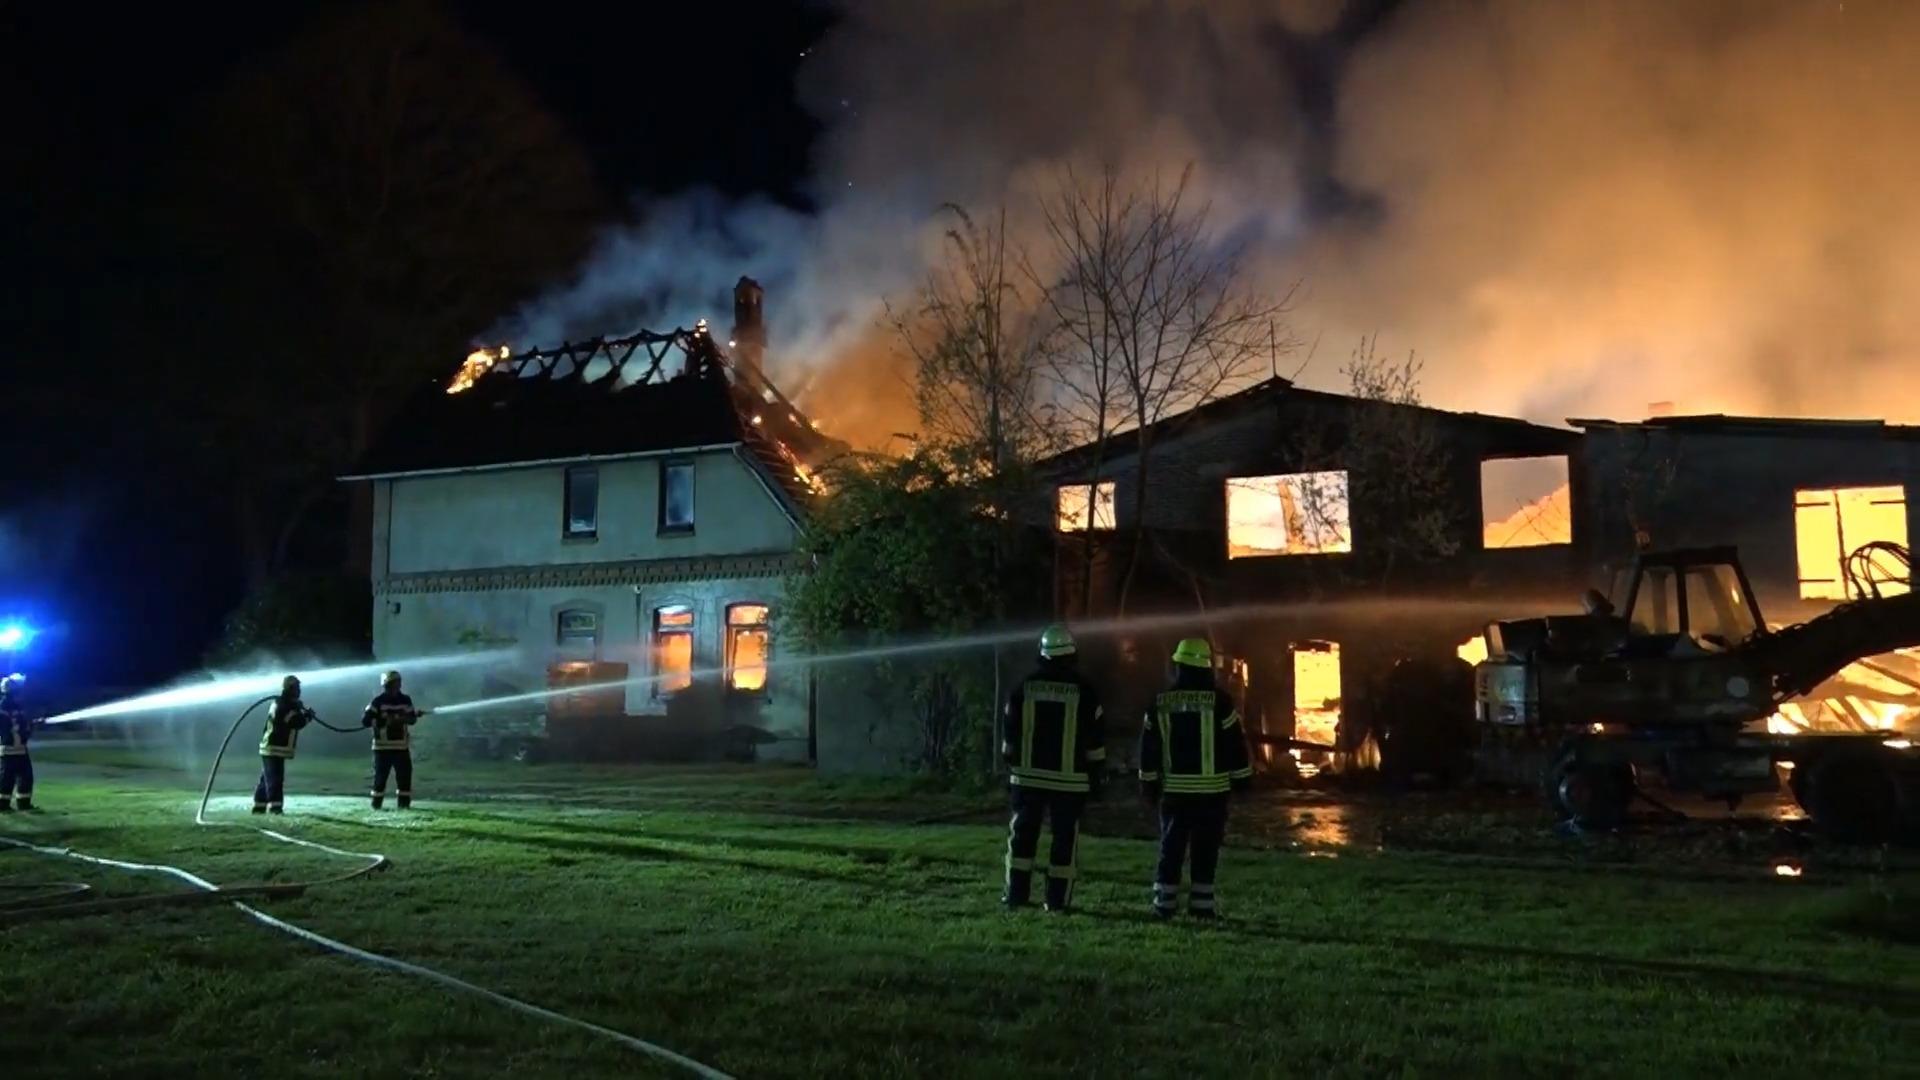 Mehrere Gebäude in Flammen - Groß-Brand in Lunestedt Sechsstelliger Sachschaden